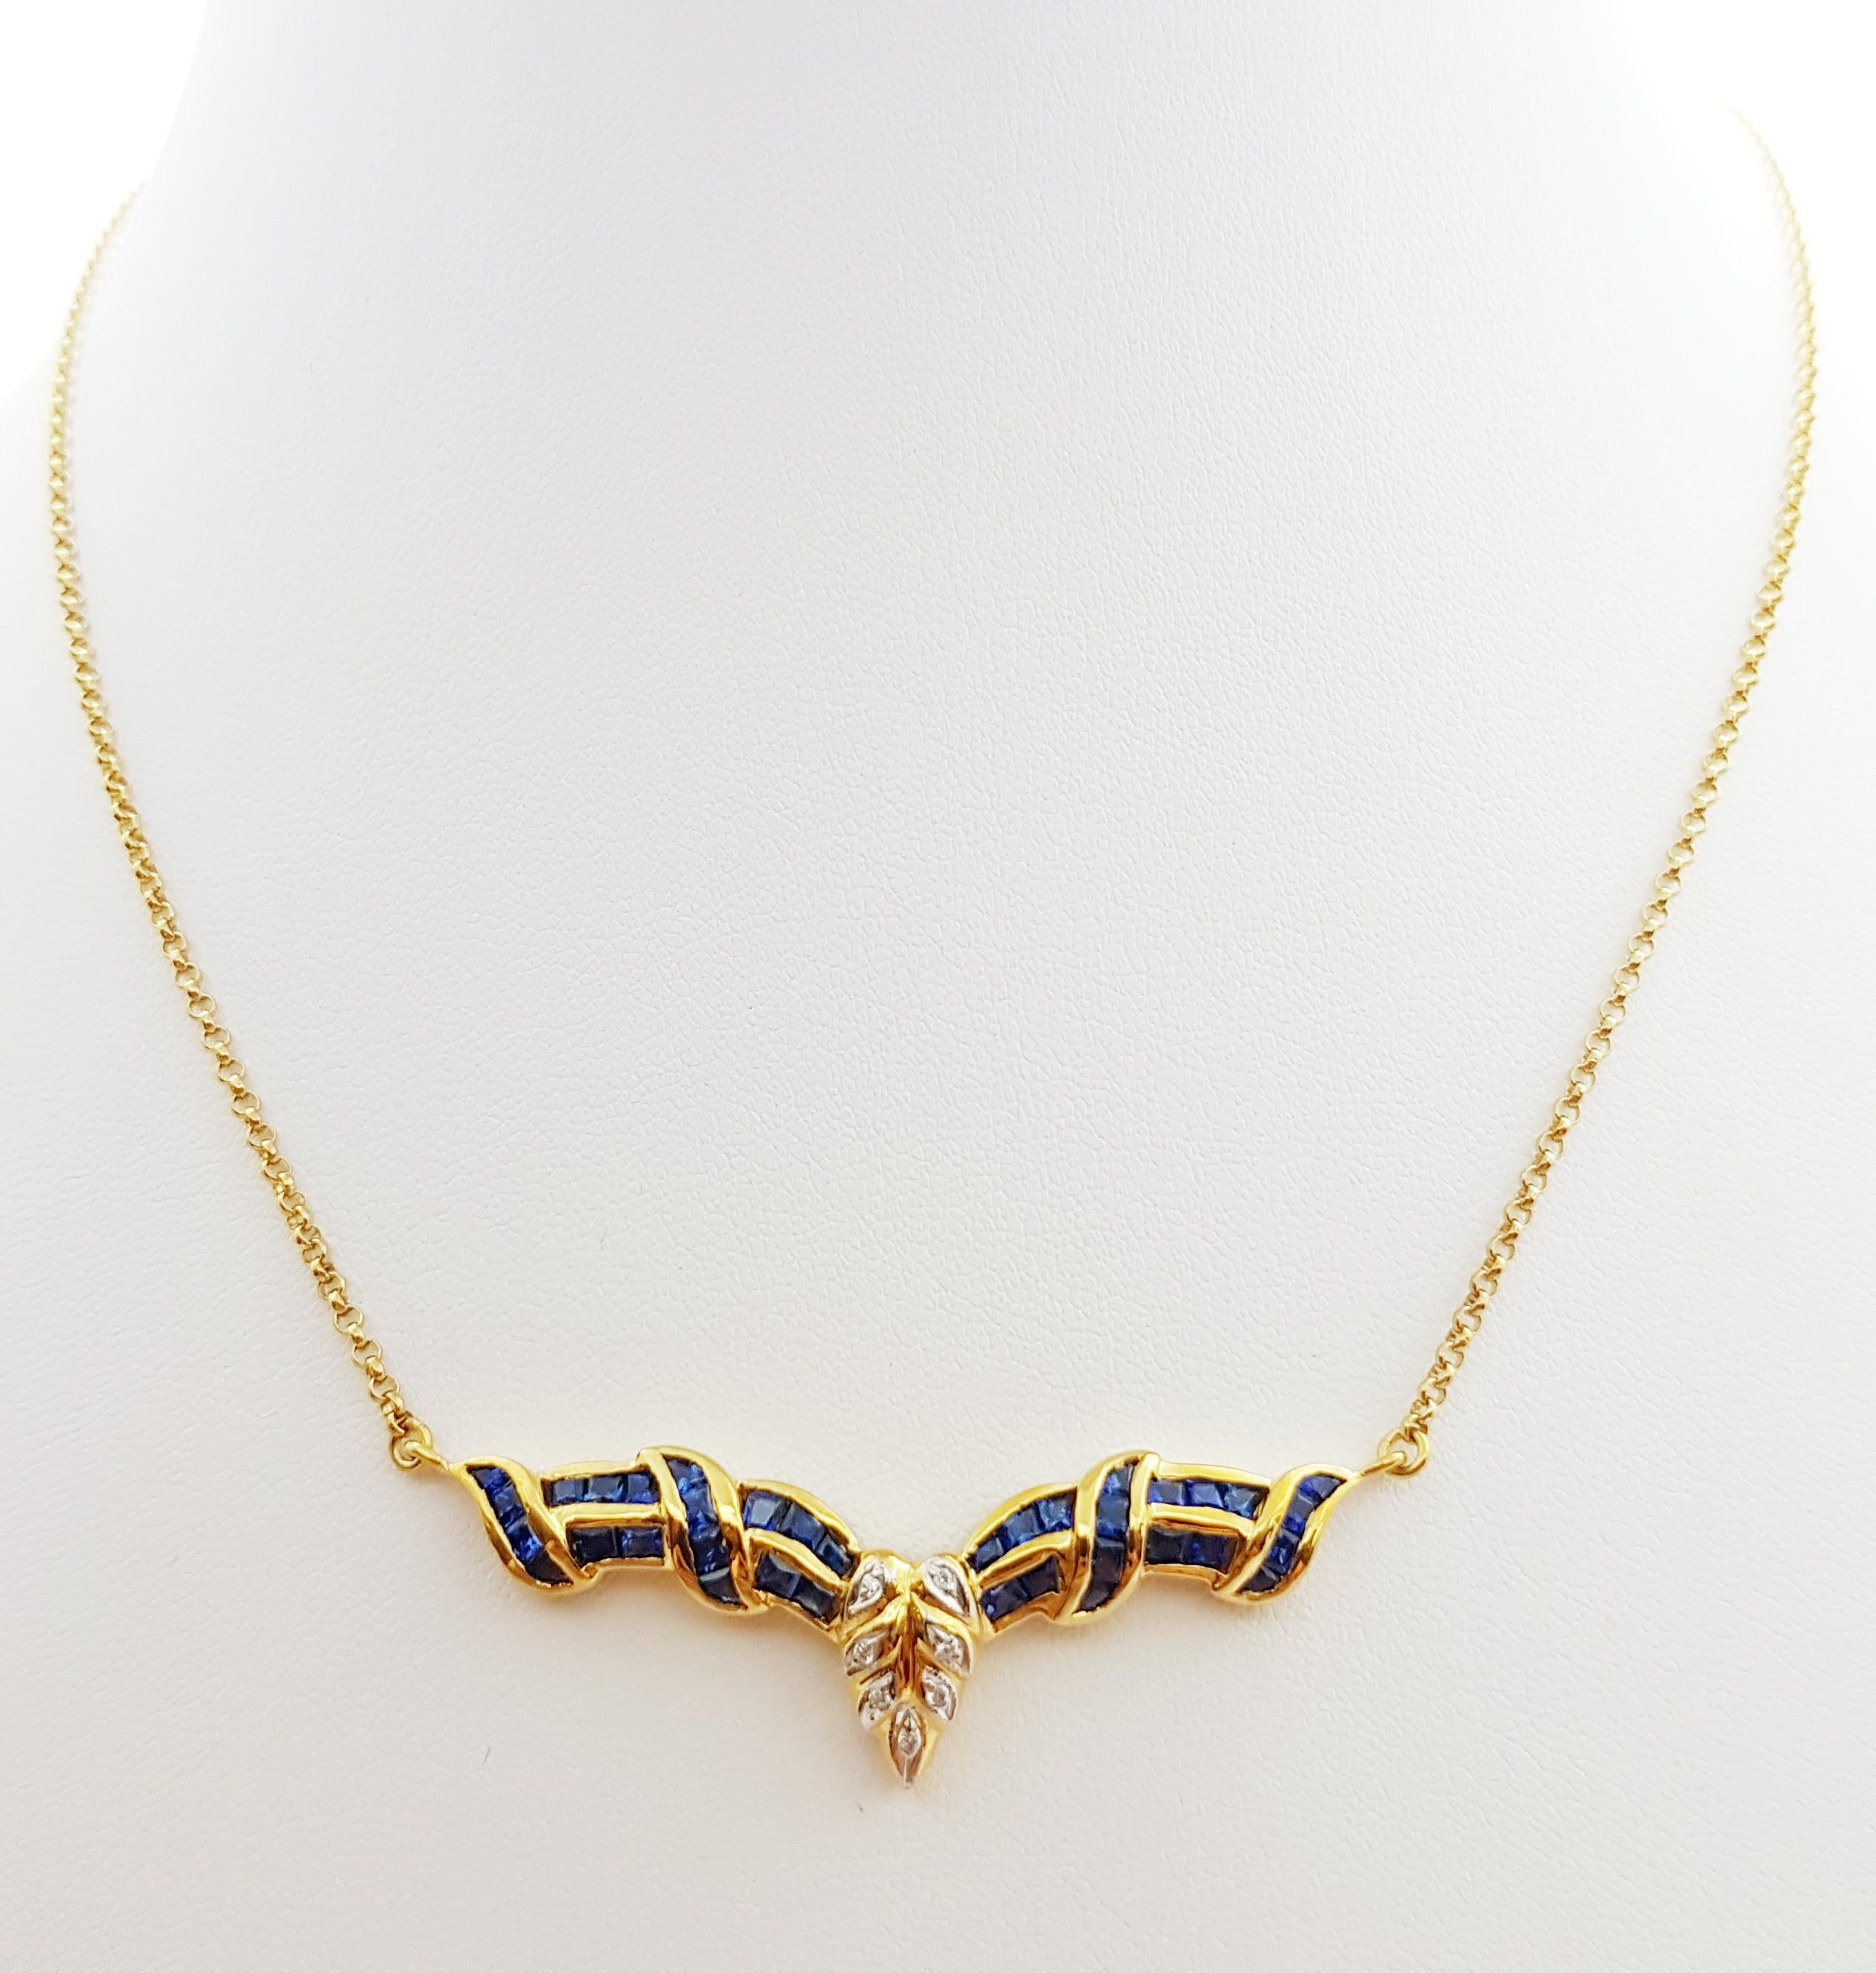 Blauer Saphir 1,80 Karat mit Diamant 0,03 Karat Halskette in 18 Karat Goldfassung

Breite: 1,5 cm 
Länge: 45,5 cm
Gesamtgewicht: 11,87 Gramm

